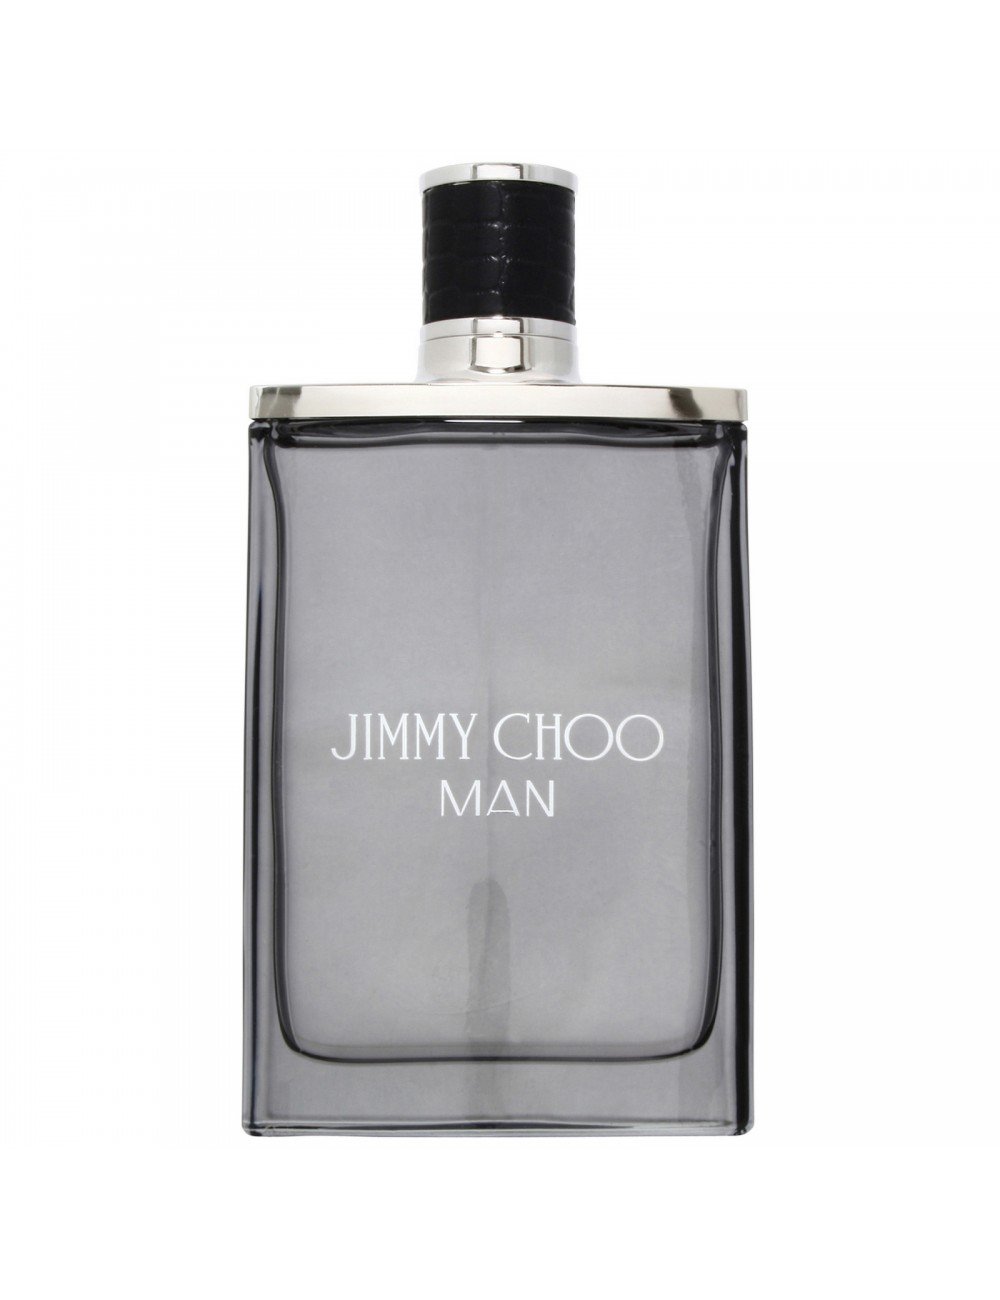 Jimmy Choo Man Eau De Toilette 100ml for Him Your